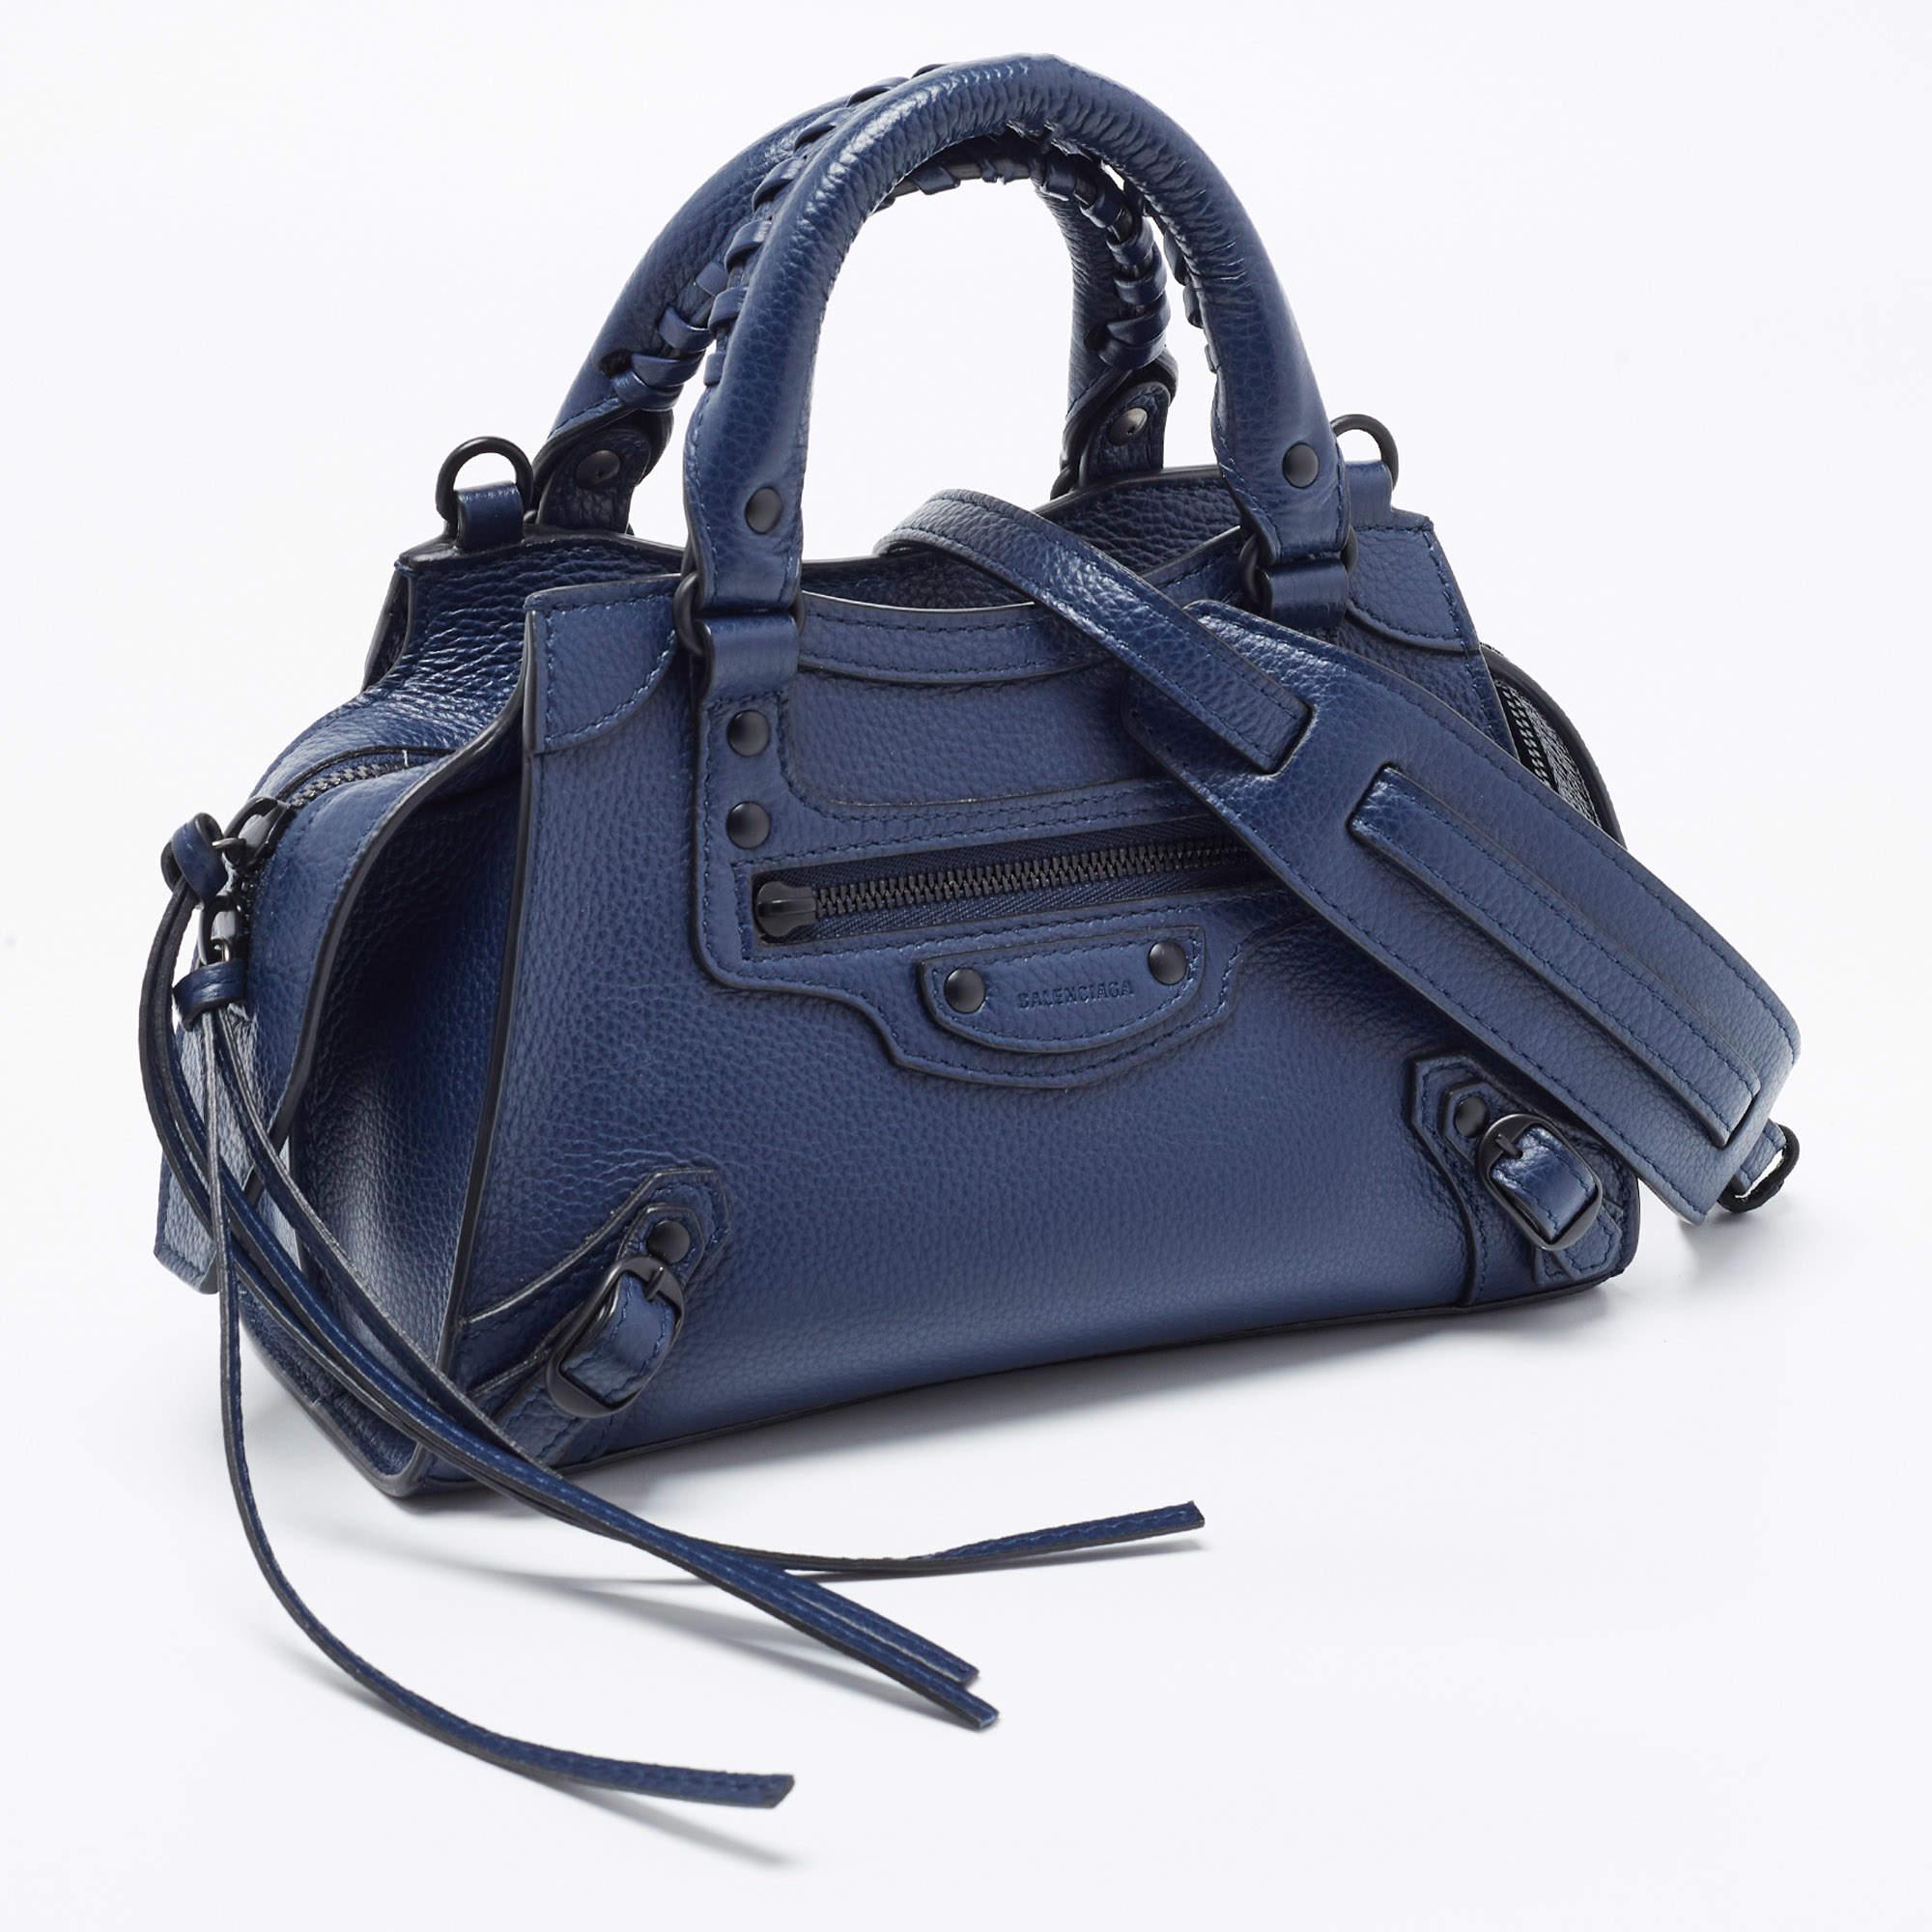 Die Balenciaga City Tote ist eine kompakte und dennoch stilvolle Handtasche aus hochwertigem dunkelblauem Leder. Sie verfügt über das kultige Neo Classic Design mit schwarzer Hardware, einen Reißverschluss an der Oberseite und einen abnehmbaren